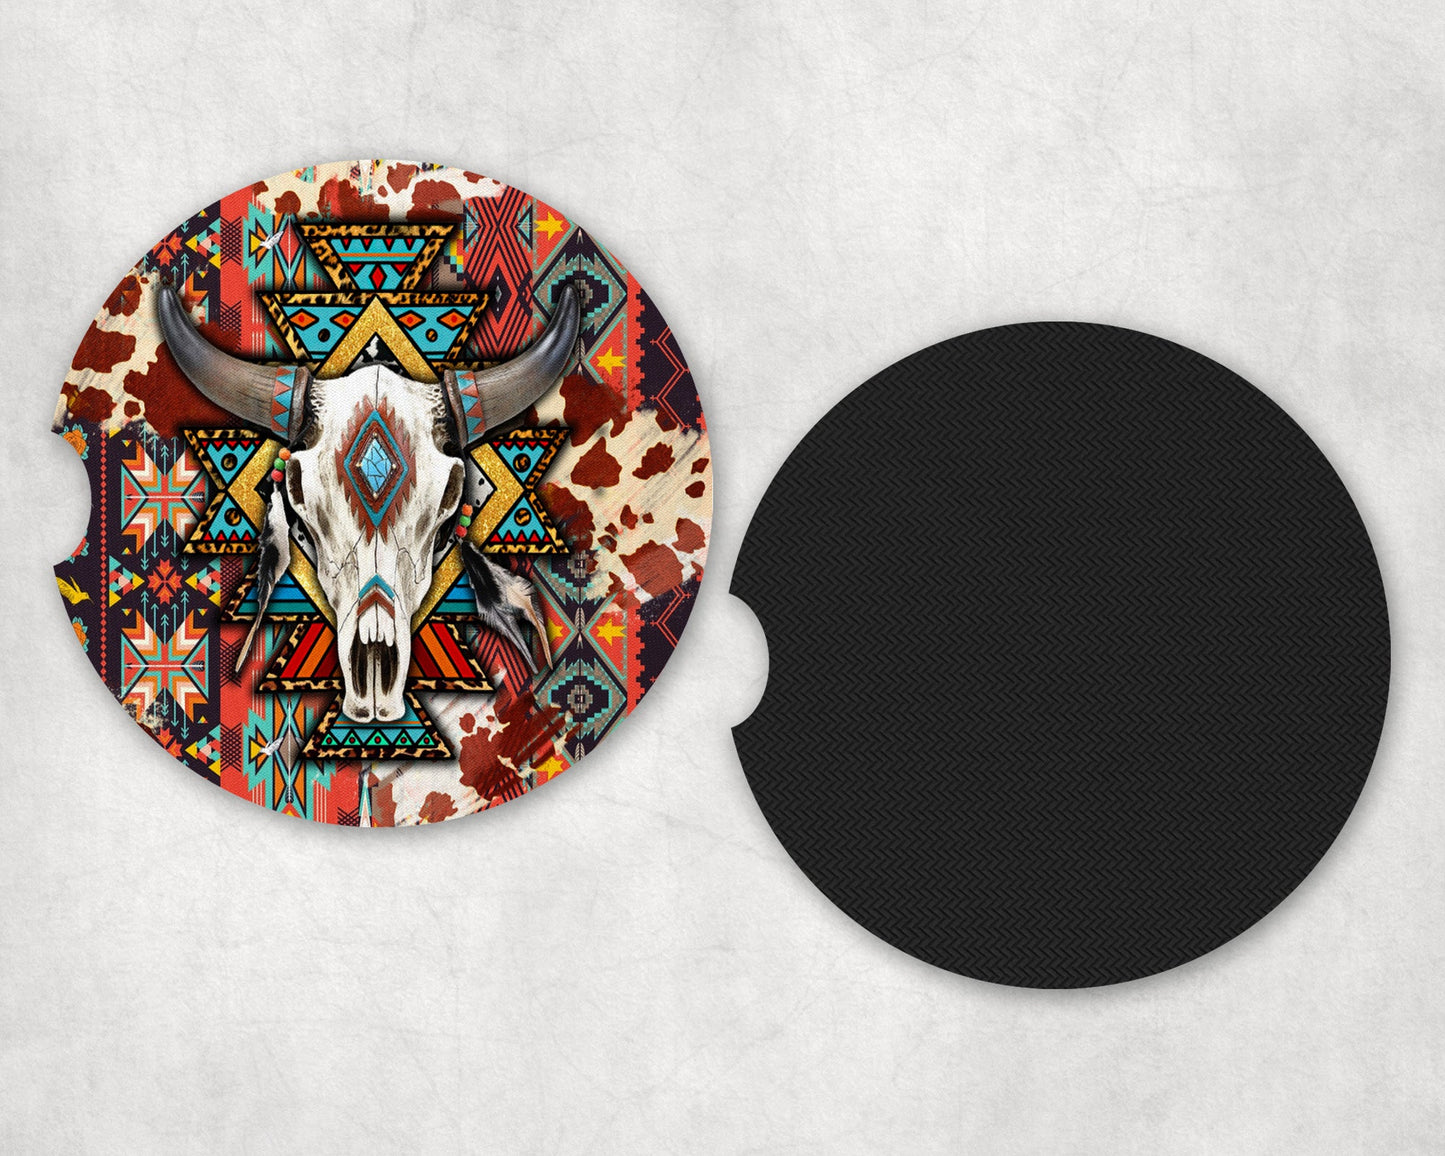 Western Aztec Bull Skull|Car Coaster Set - Car Coaster